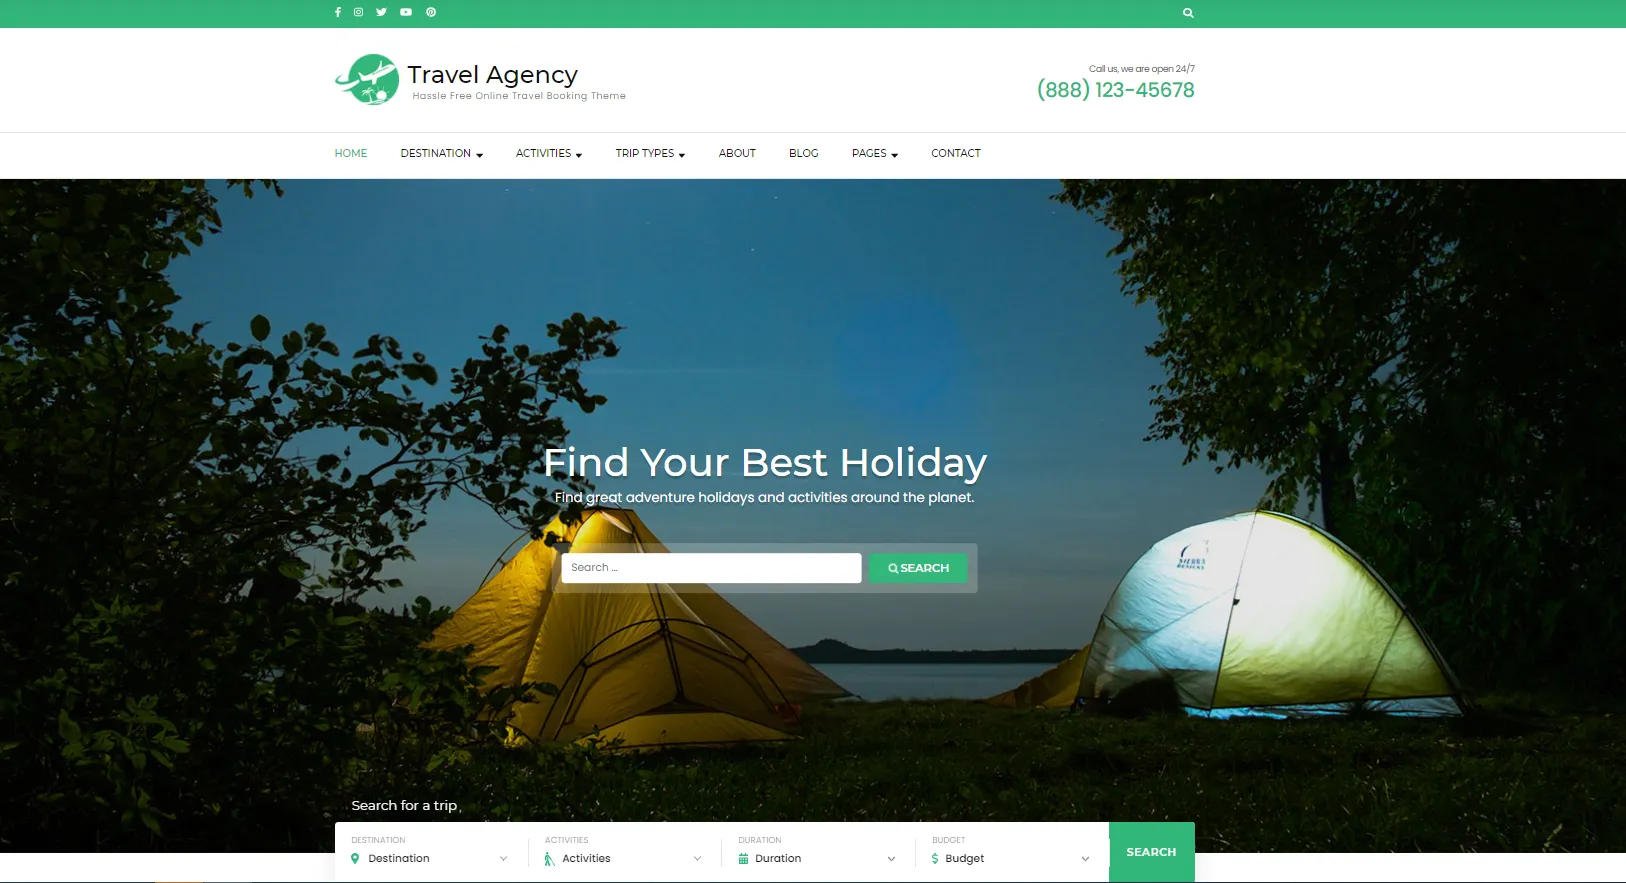 Travel Agency theme WordPress du lịch miễn phí